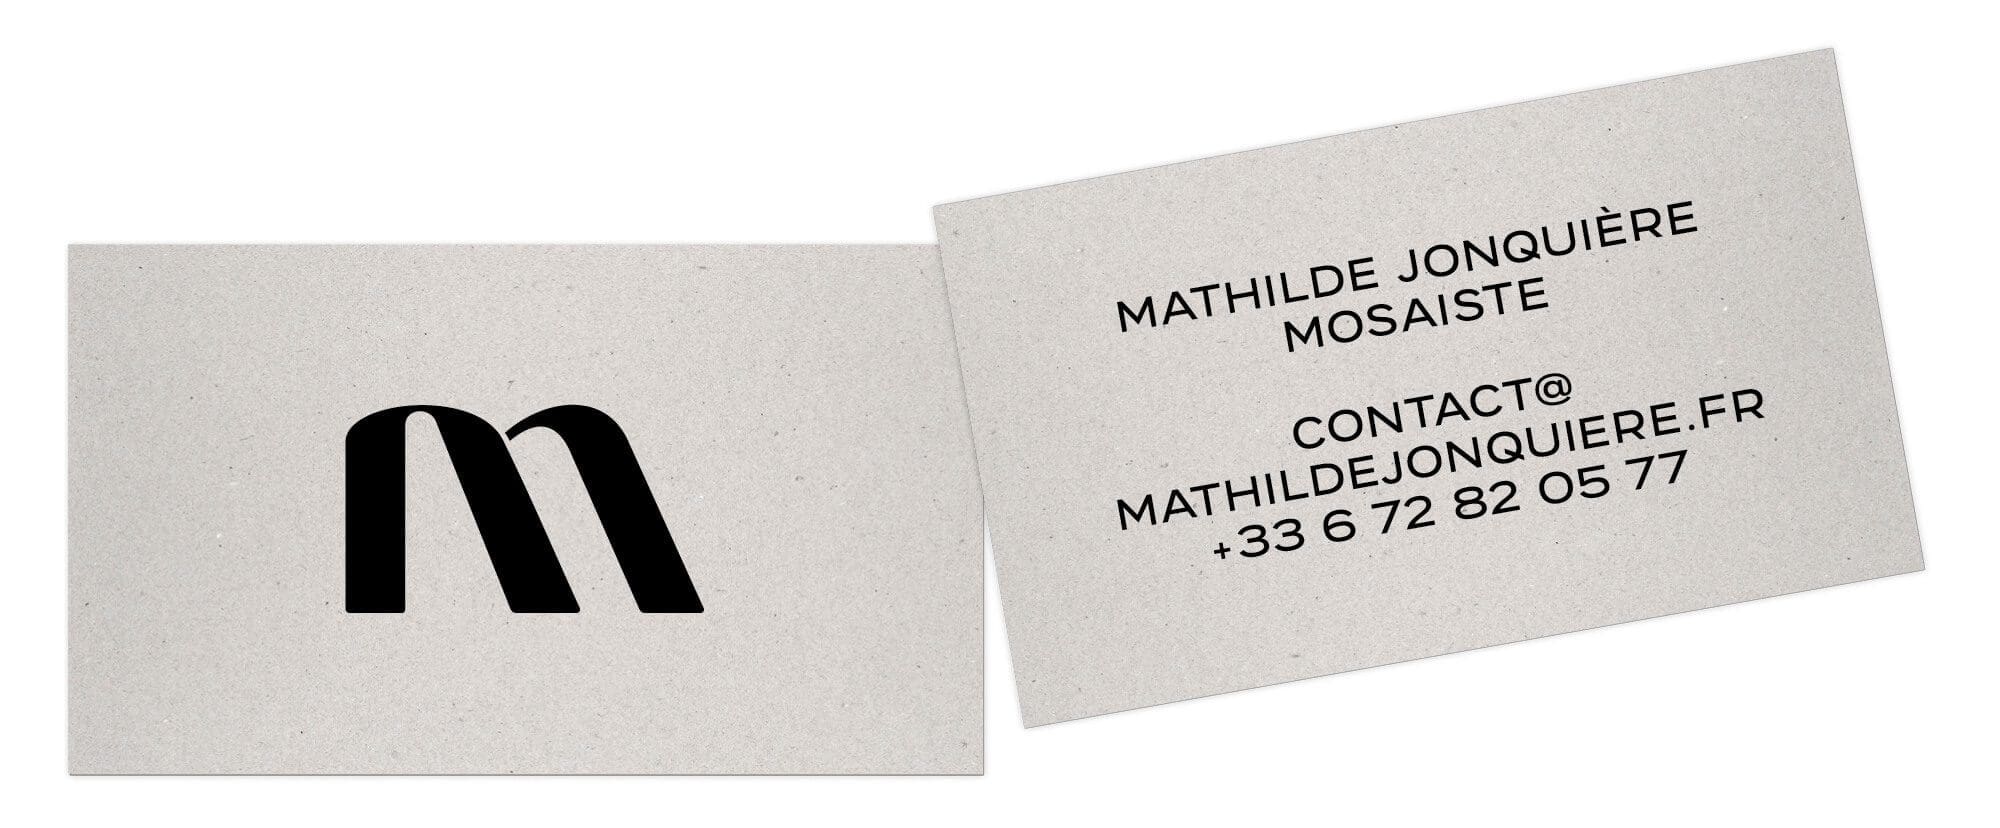 Carte de visite pour la mosaïste Mathilde Jonquiere, design IchetKar